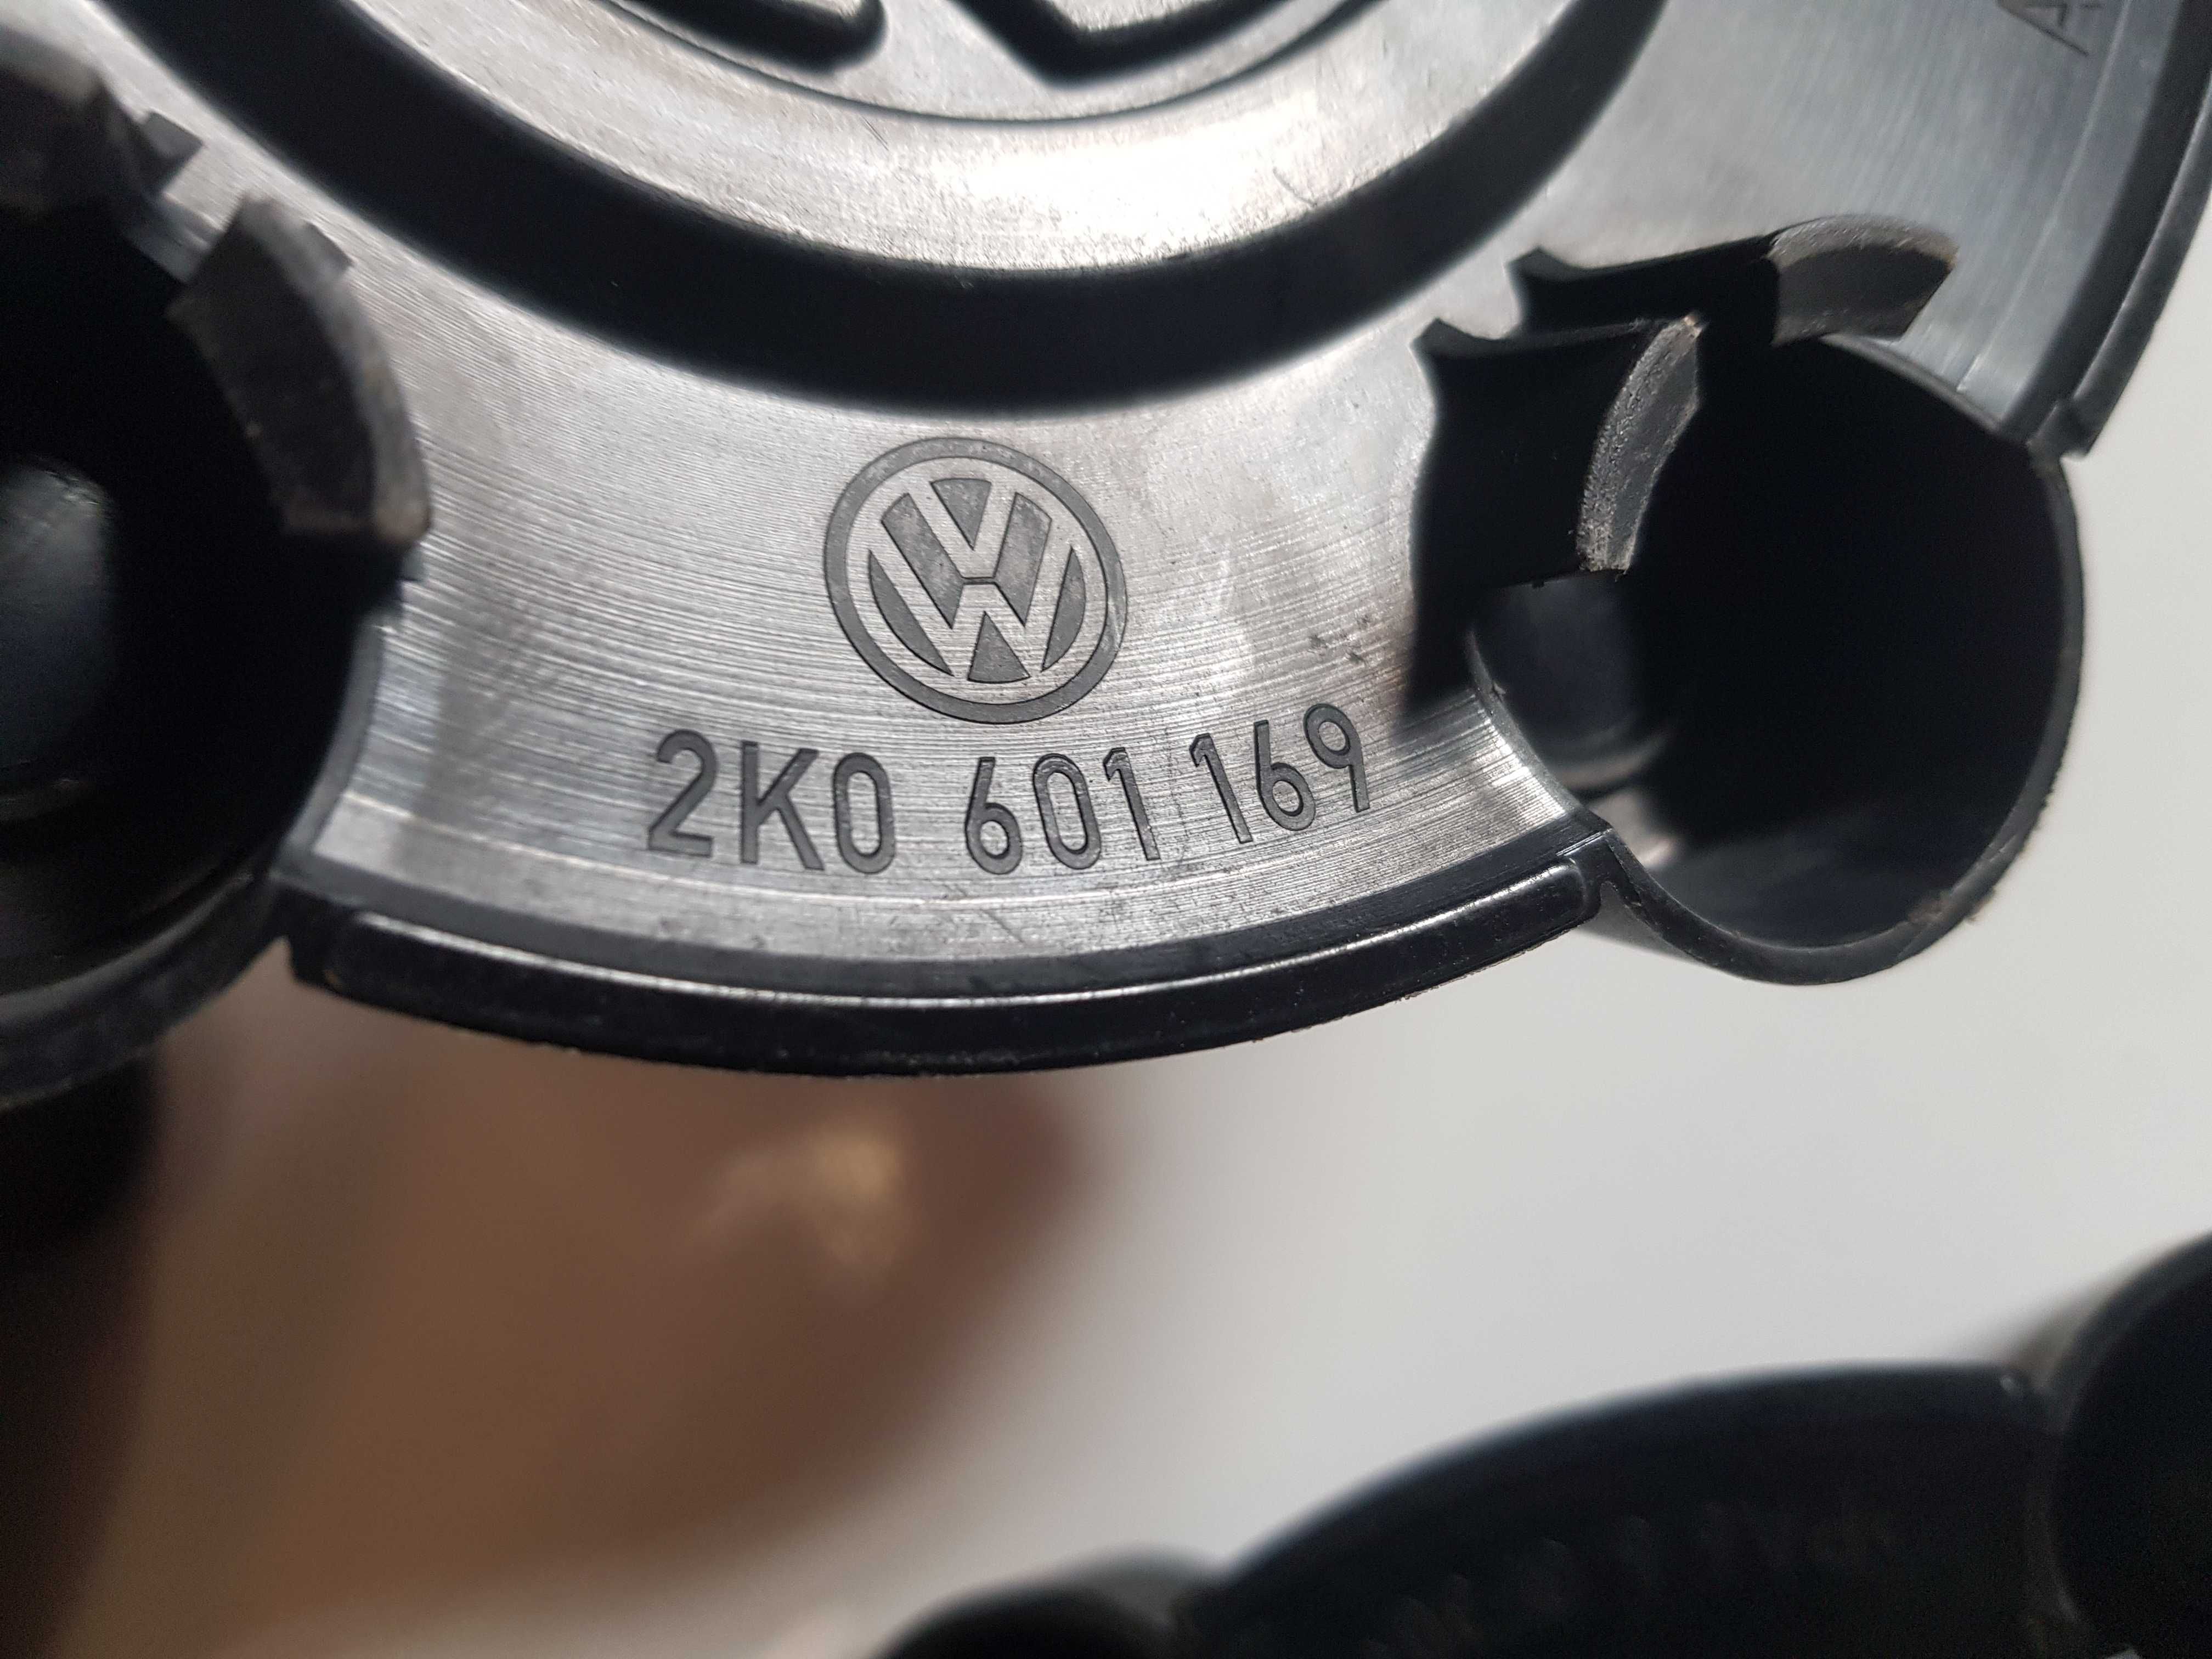 Колпак на диск Volkswagen Caddy 2K0 601 169 (комплект 4 шт.)